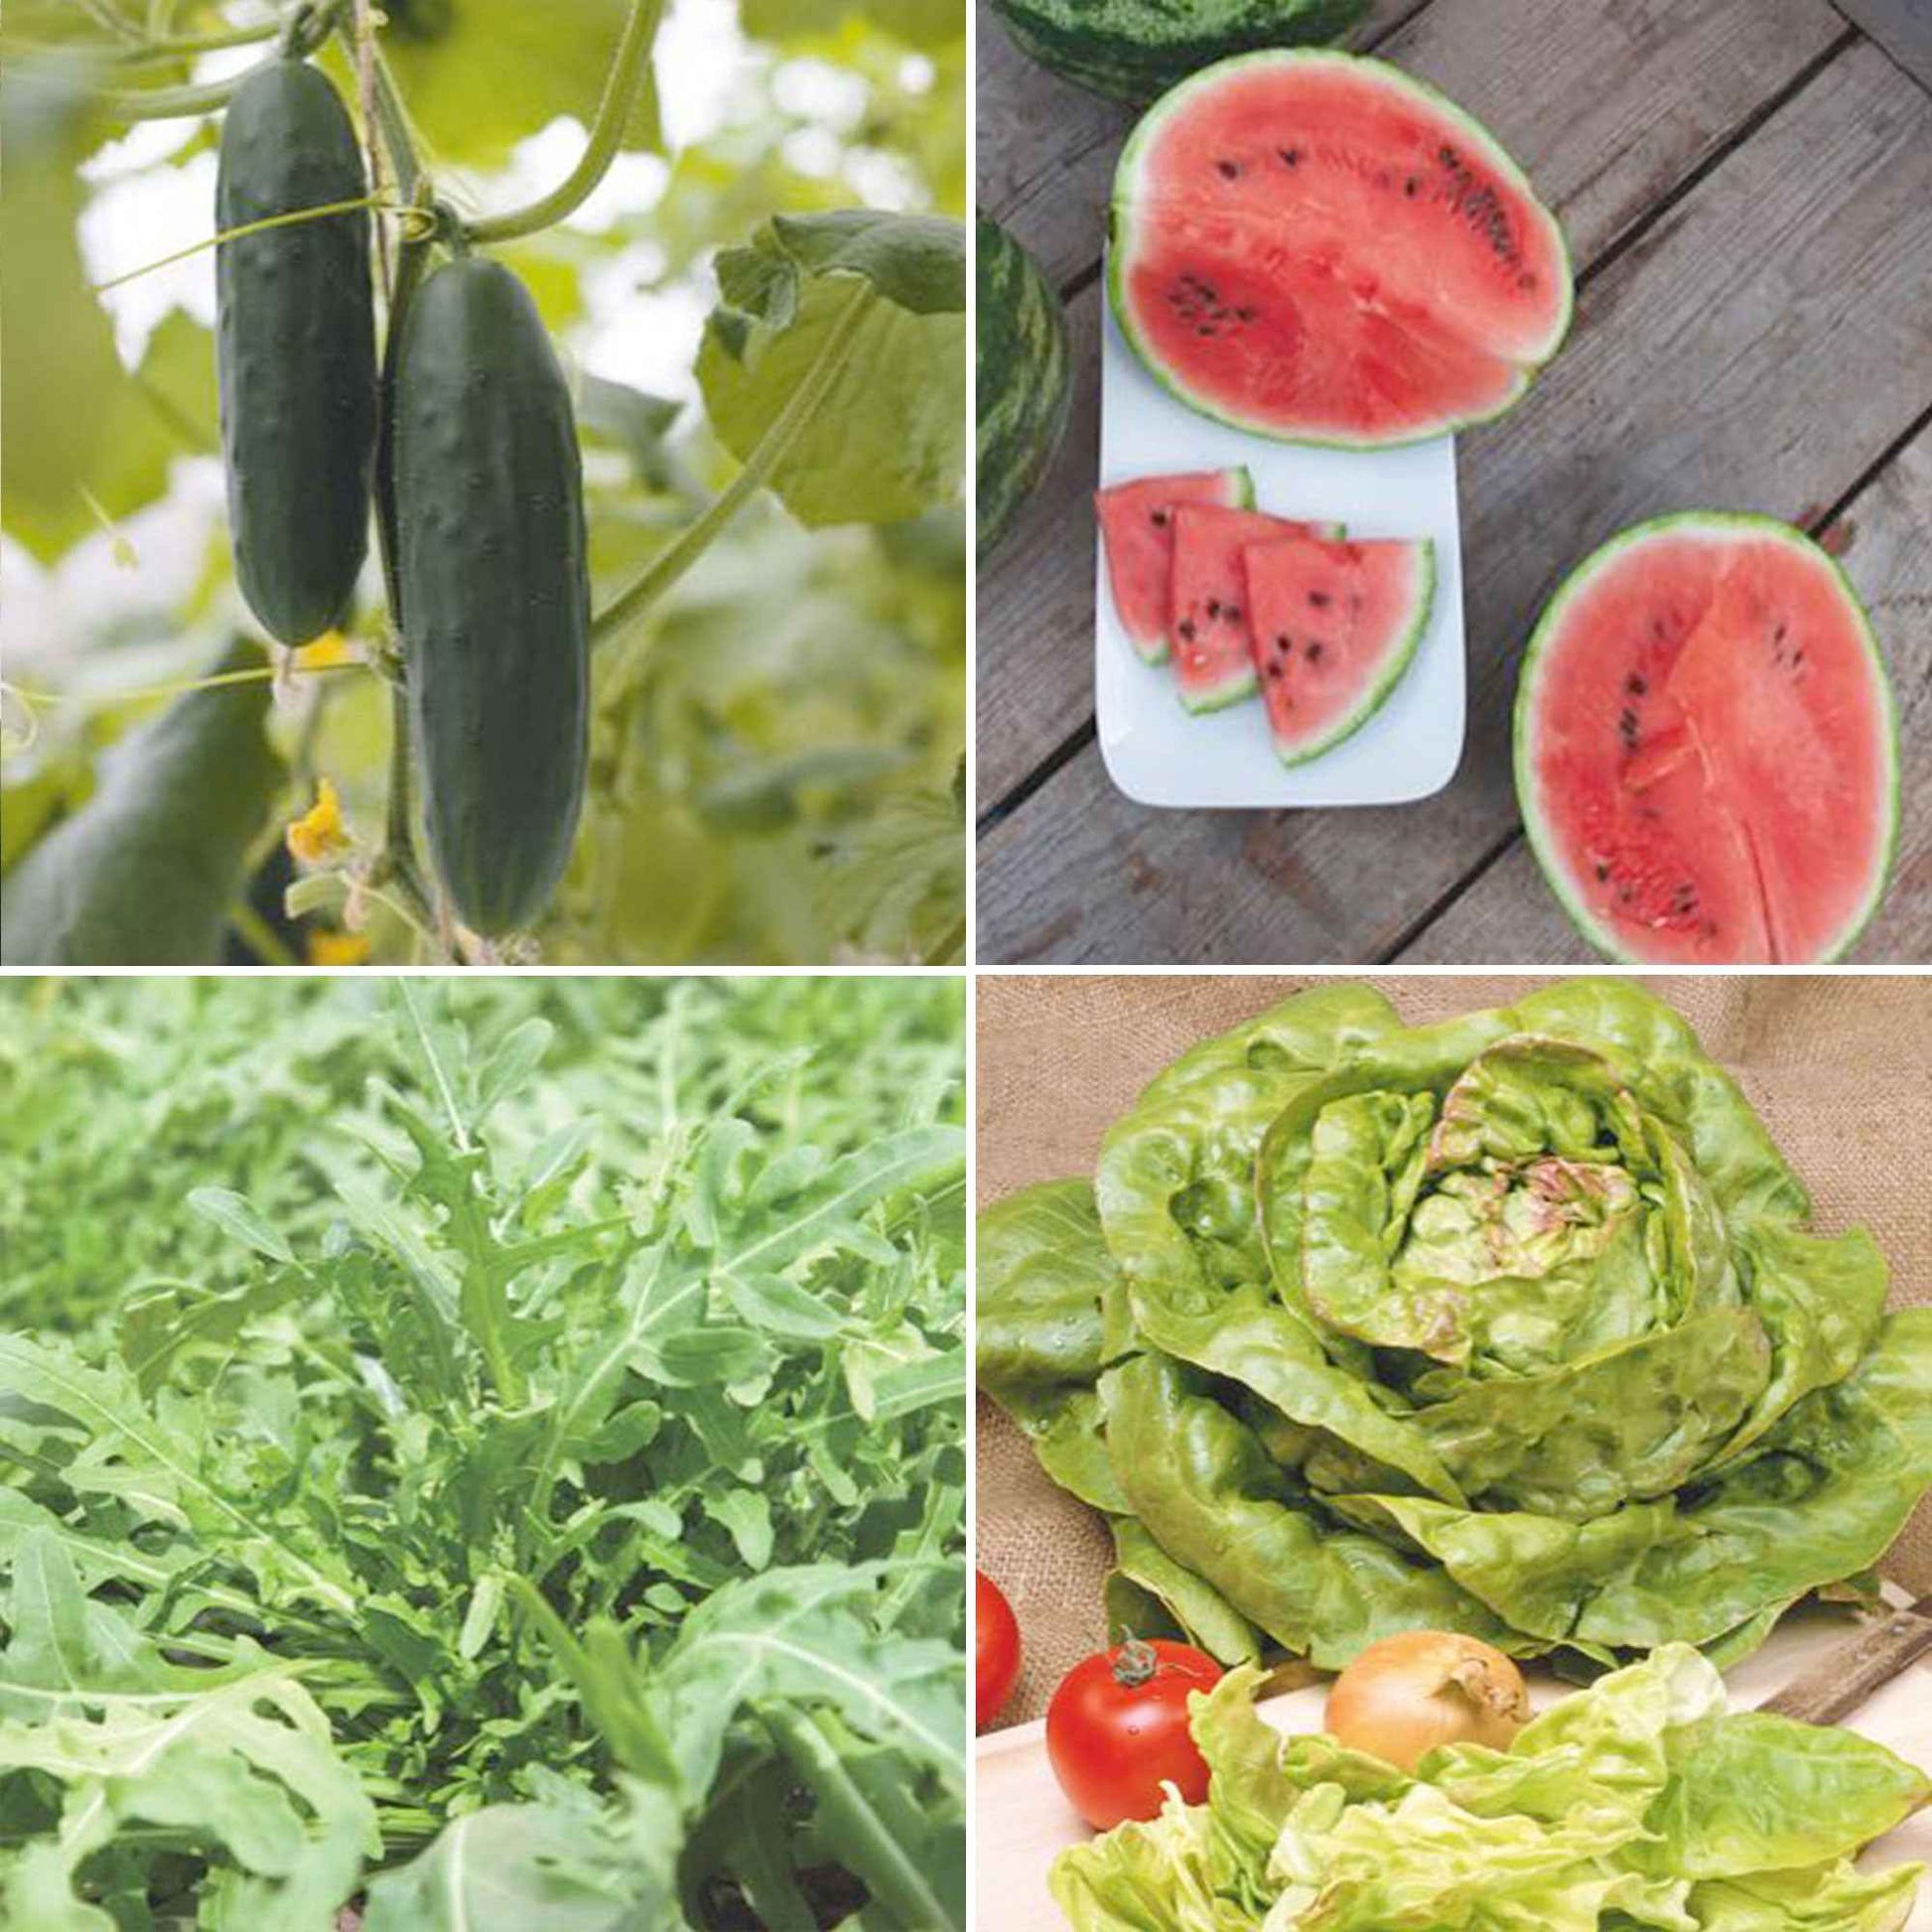 Pack d'été 'Été Étincelant' - Biologique Graines de légumes, graines aromatiques, graines de fruits - Entretien du potager